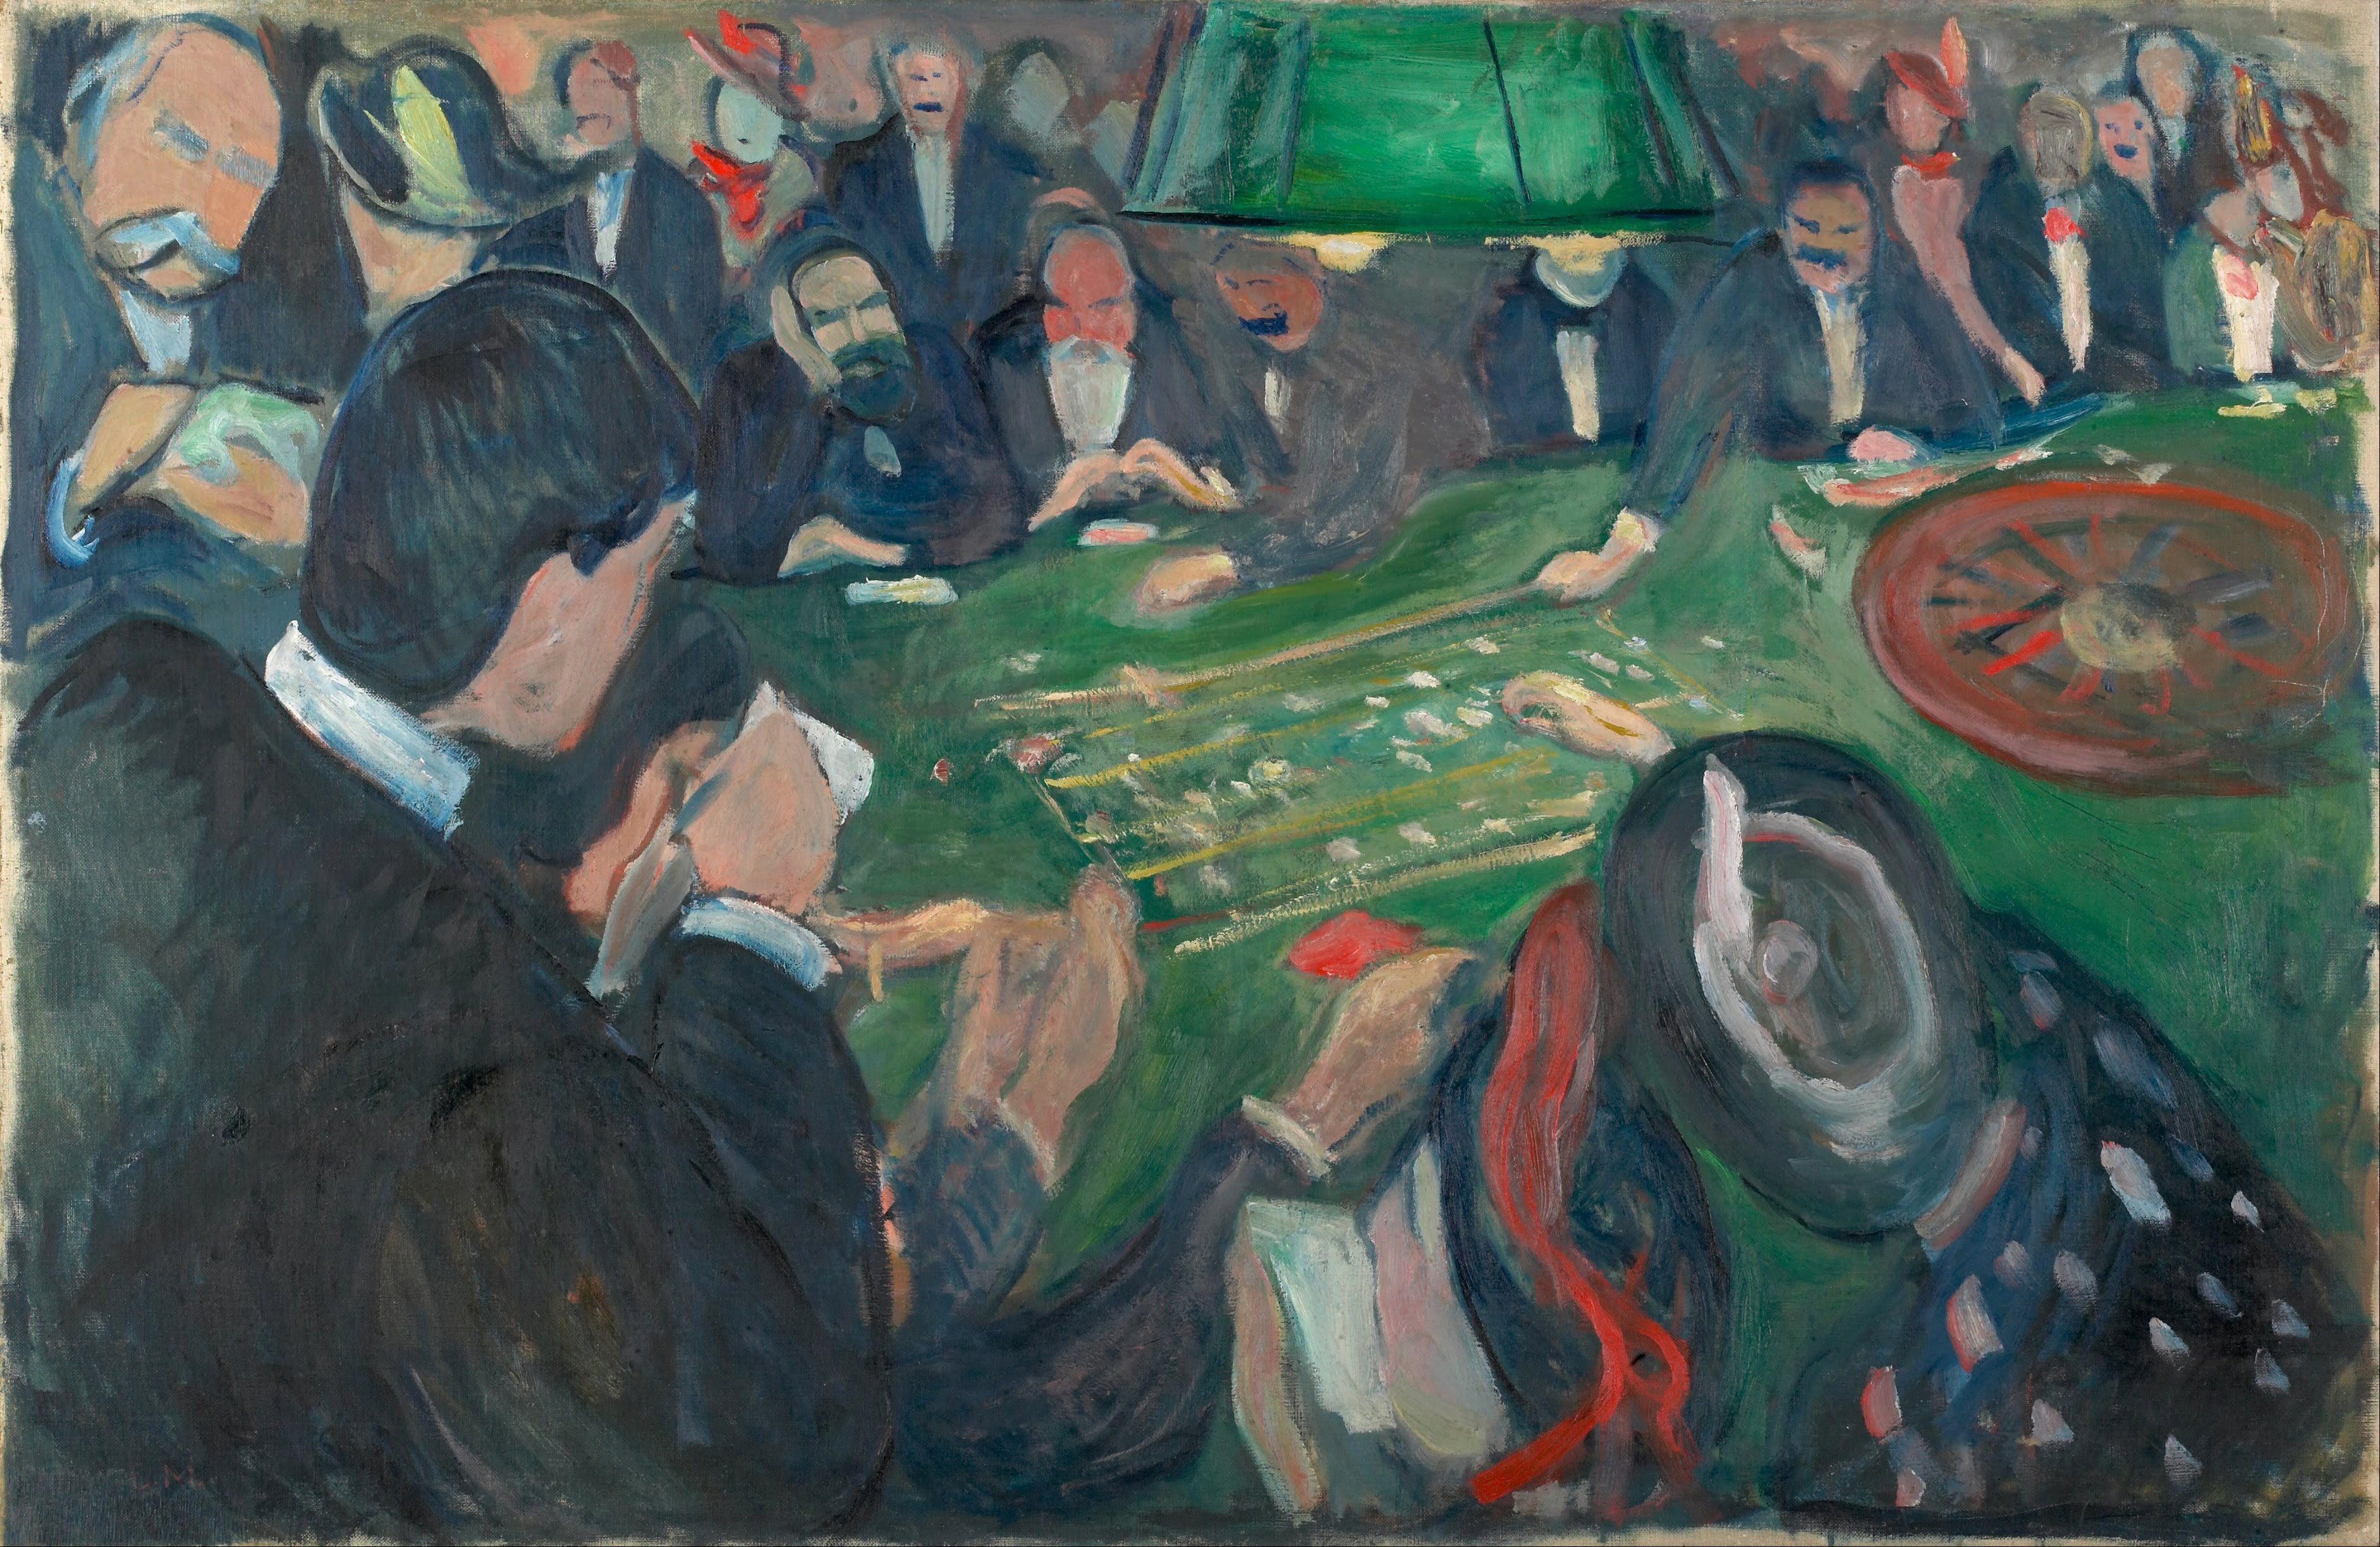 A la table de roulette à Monte Carlo by Edvard Munch - 1892 - 74.5 x 116 cm Le Musée Munch